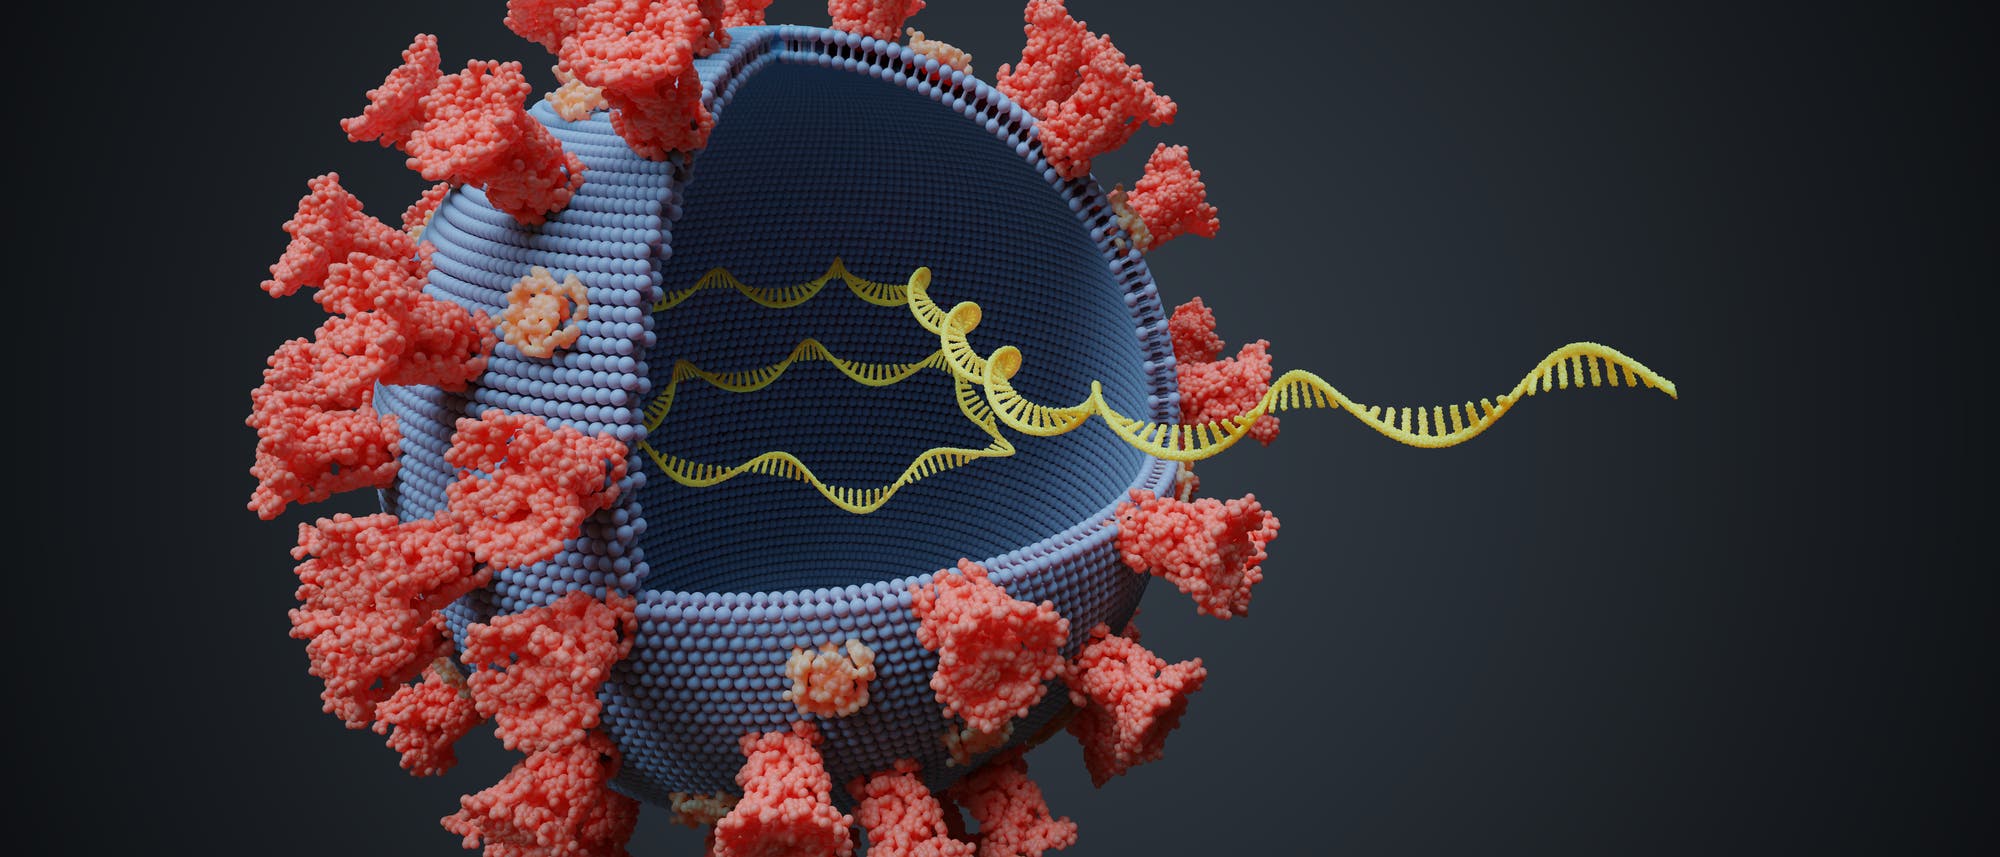 Skizzenhafte Darstellung eines Coronavirus mit Membran, Spikes und einzelsträngiger RNA.